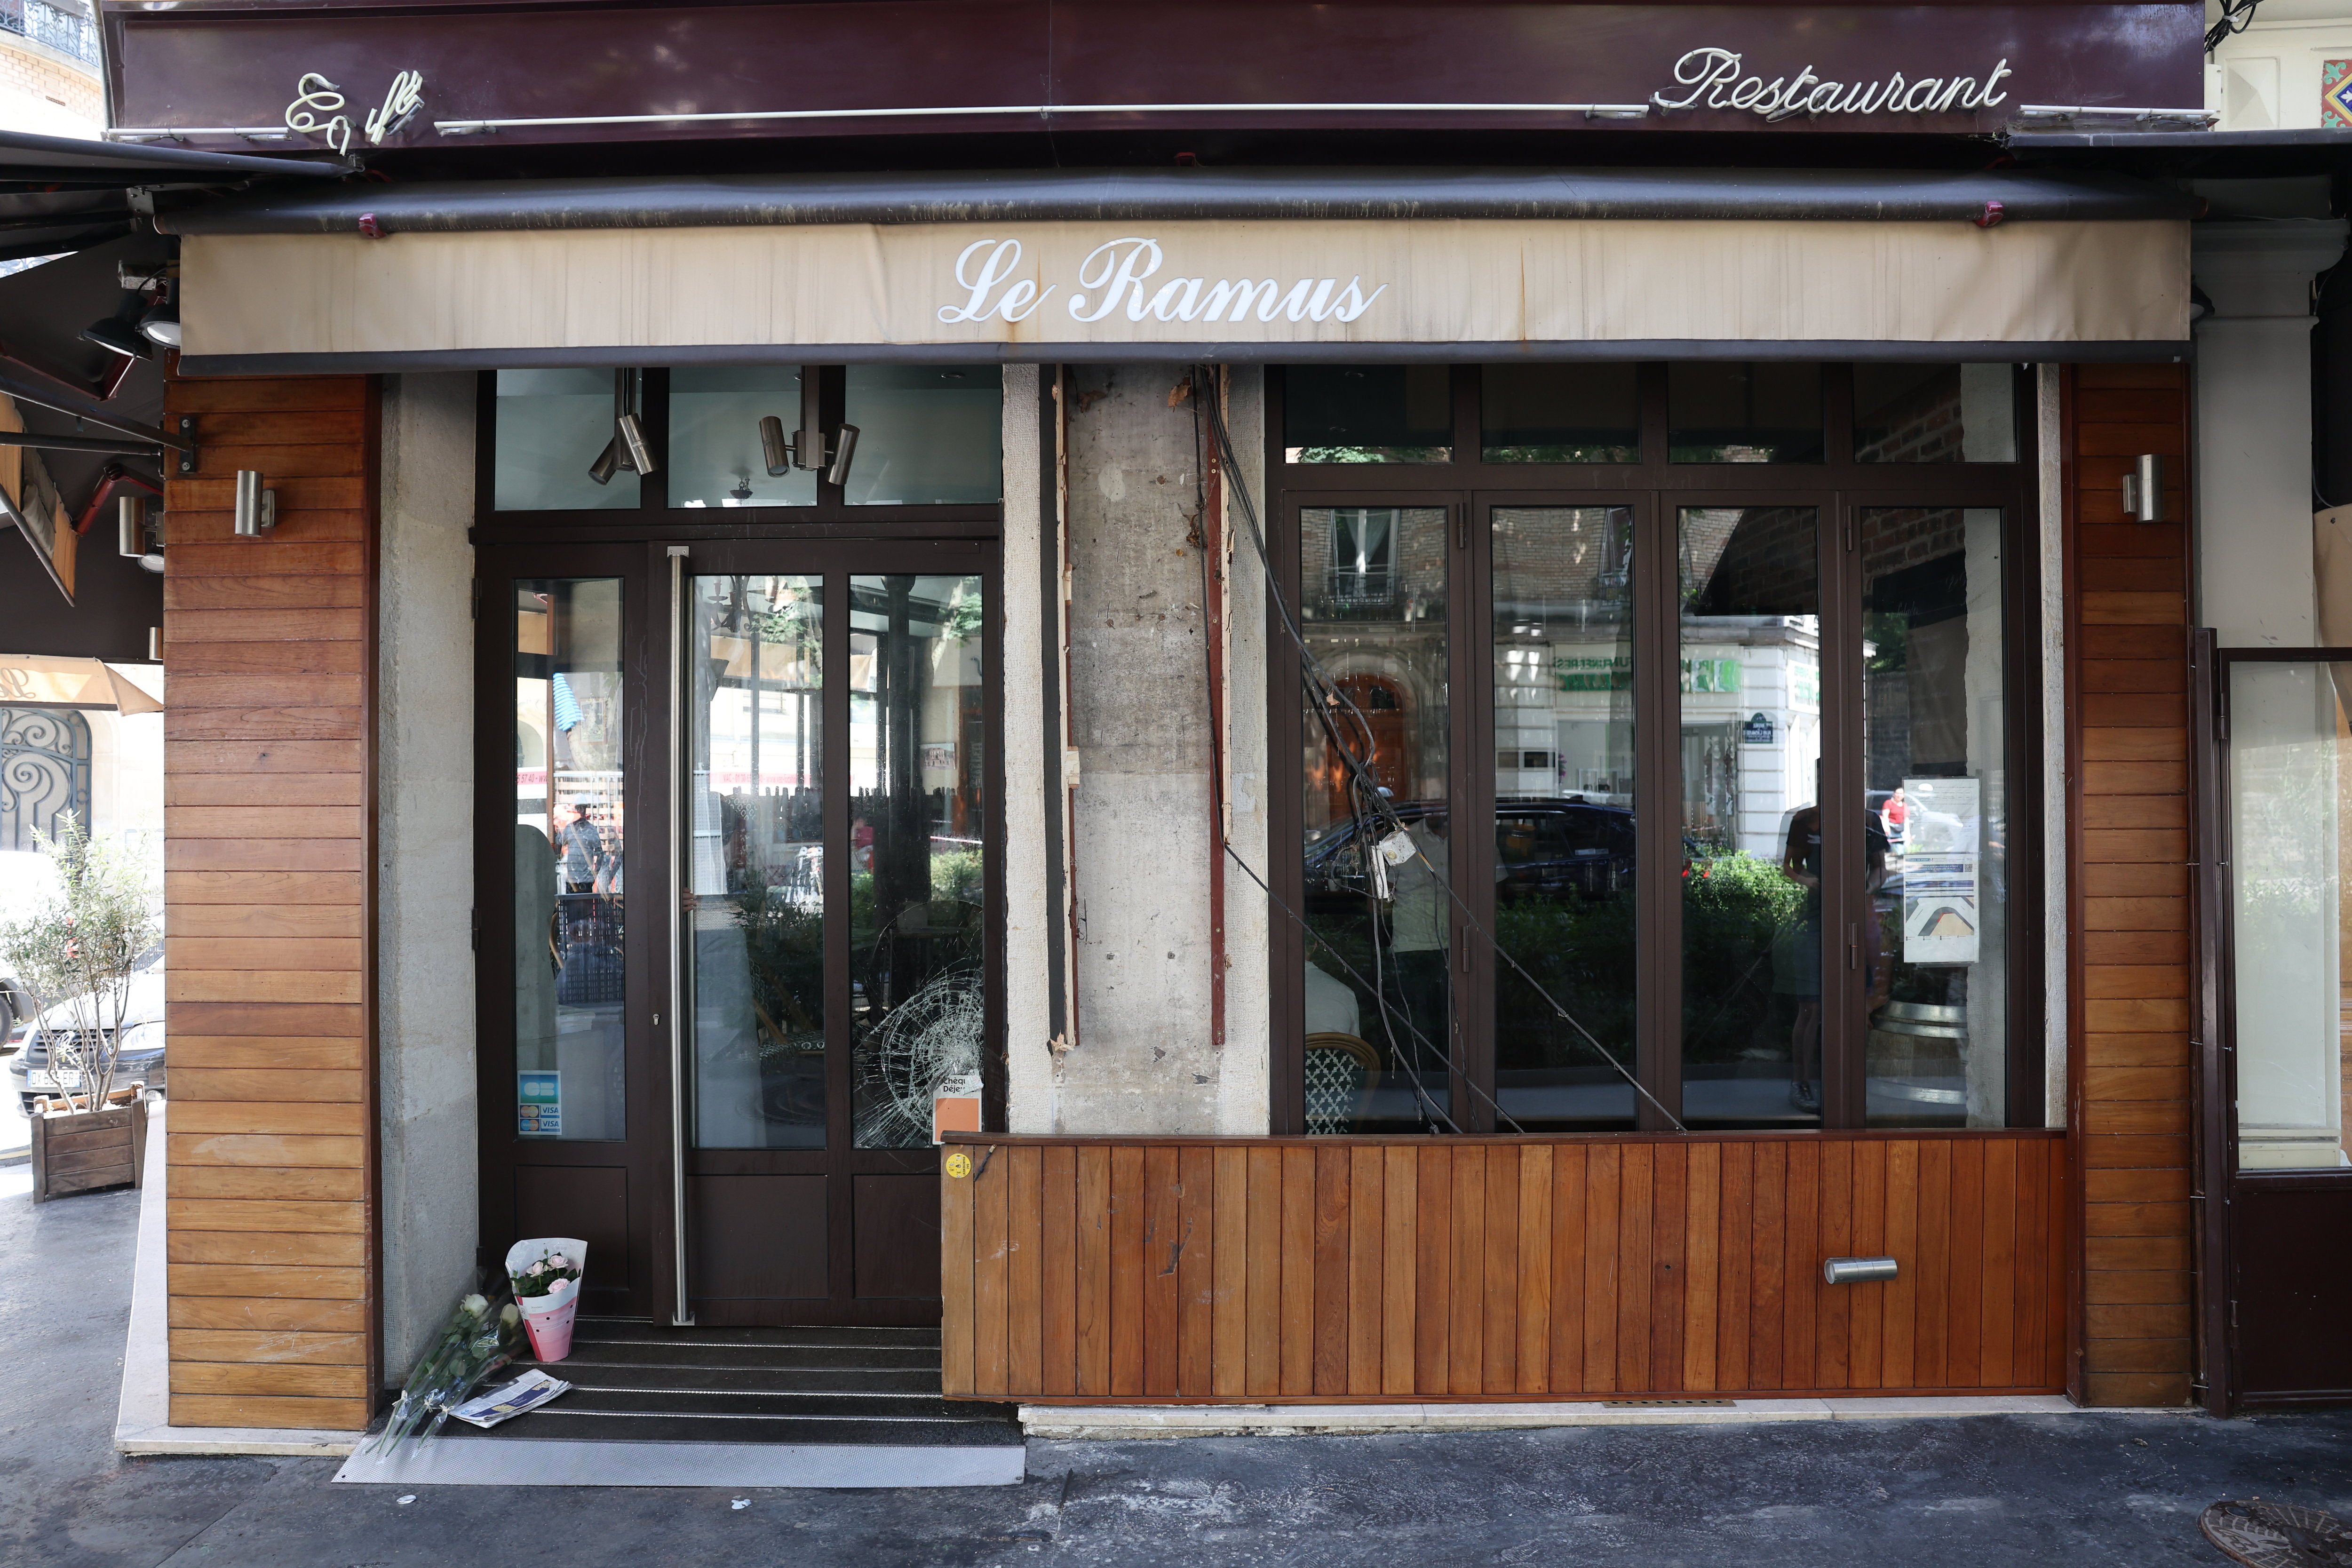 Des roses blanches et une bougie ont été déposées par des passants, ce jeudi matin, à l'endroit même où une voiture a fini sa course, mercredi soir, fauchant plusieurs clients installés à la terrasse du Ramus, à Paris (XXe). LP/Arnaud Journois